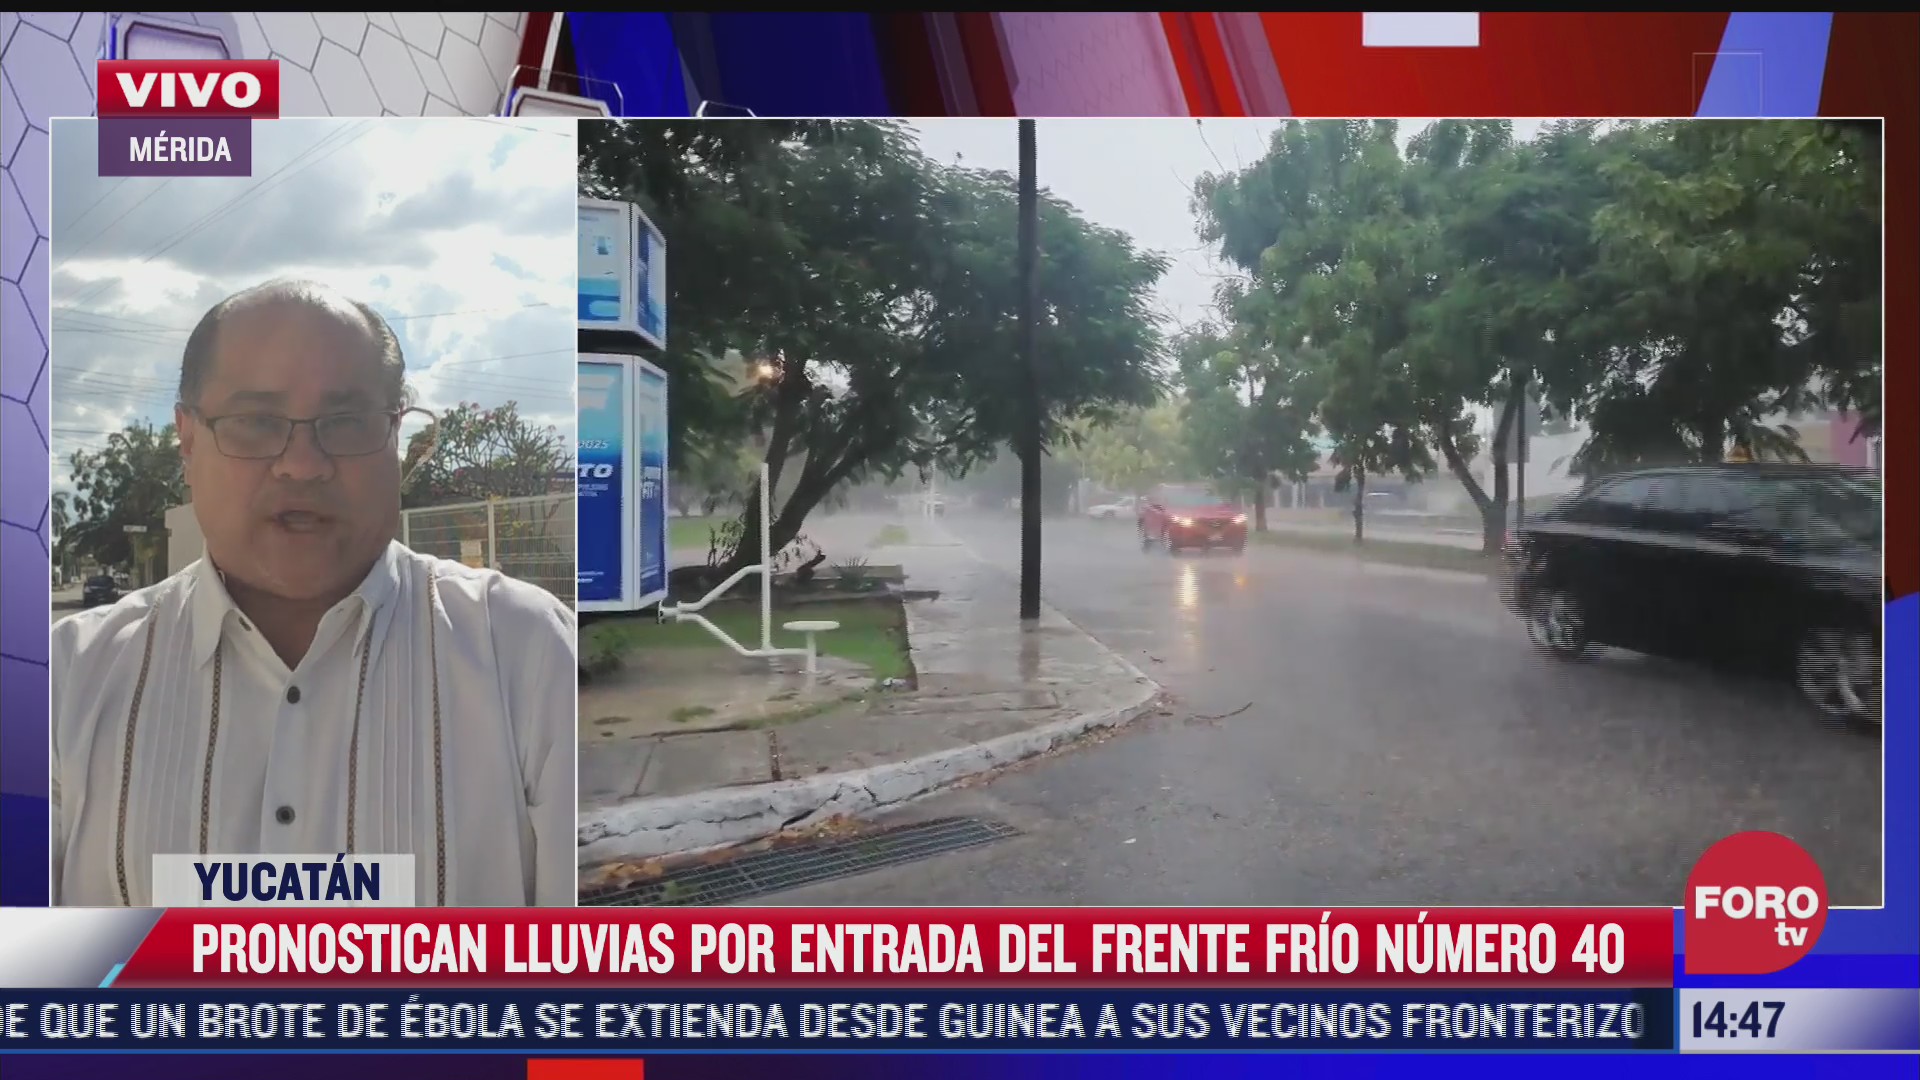 pronostican lluvias por entrada de frente frio 40 en yucatan